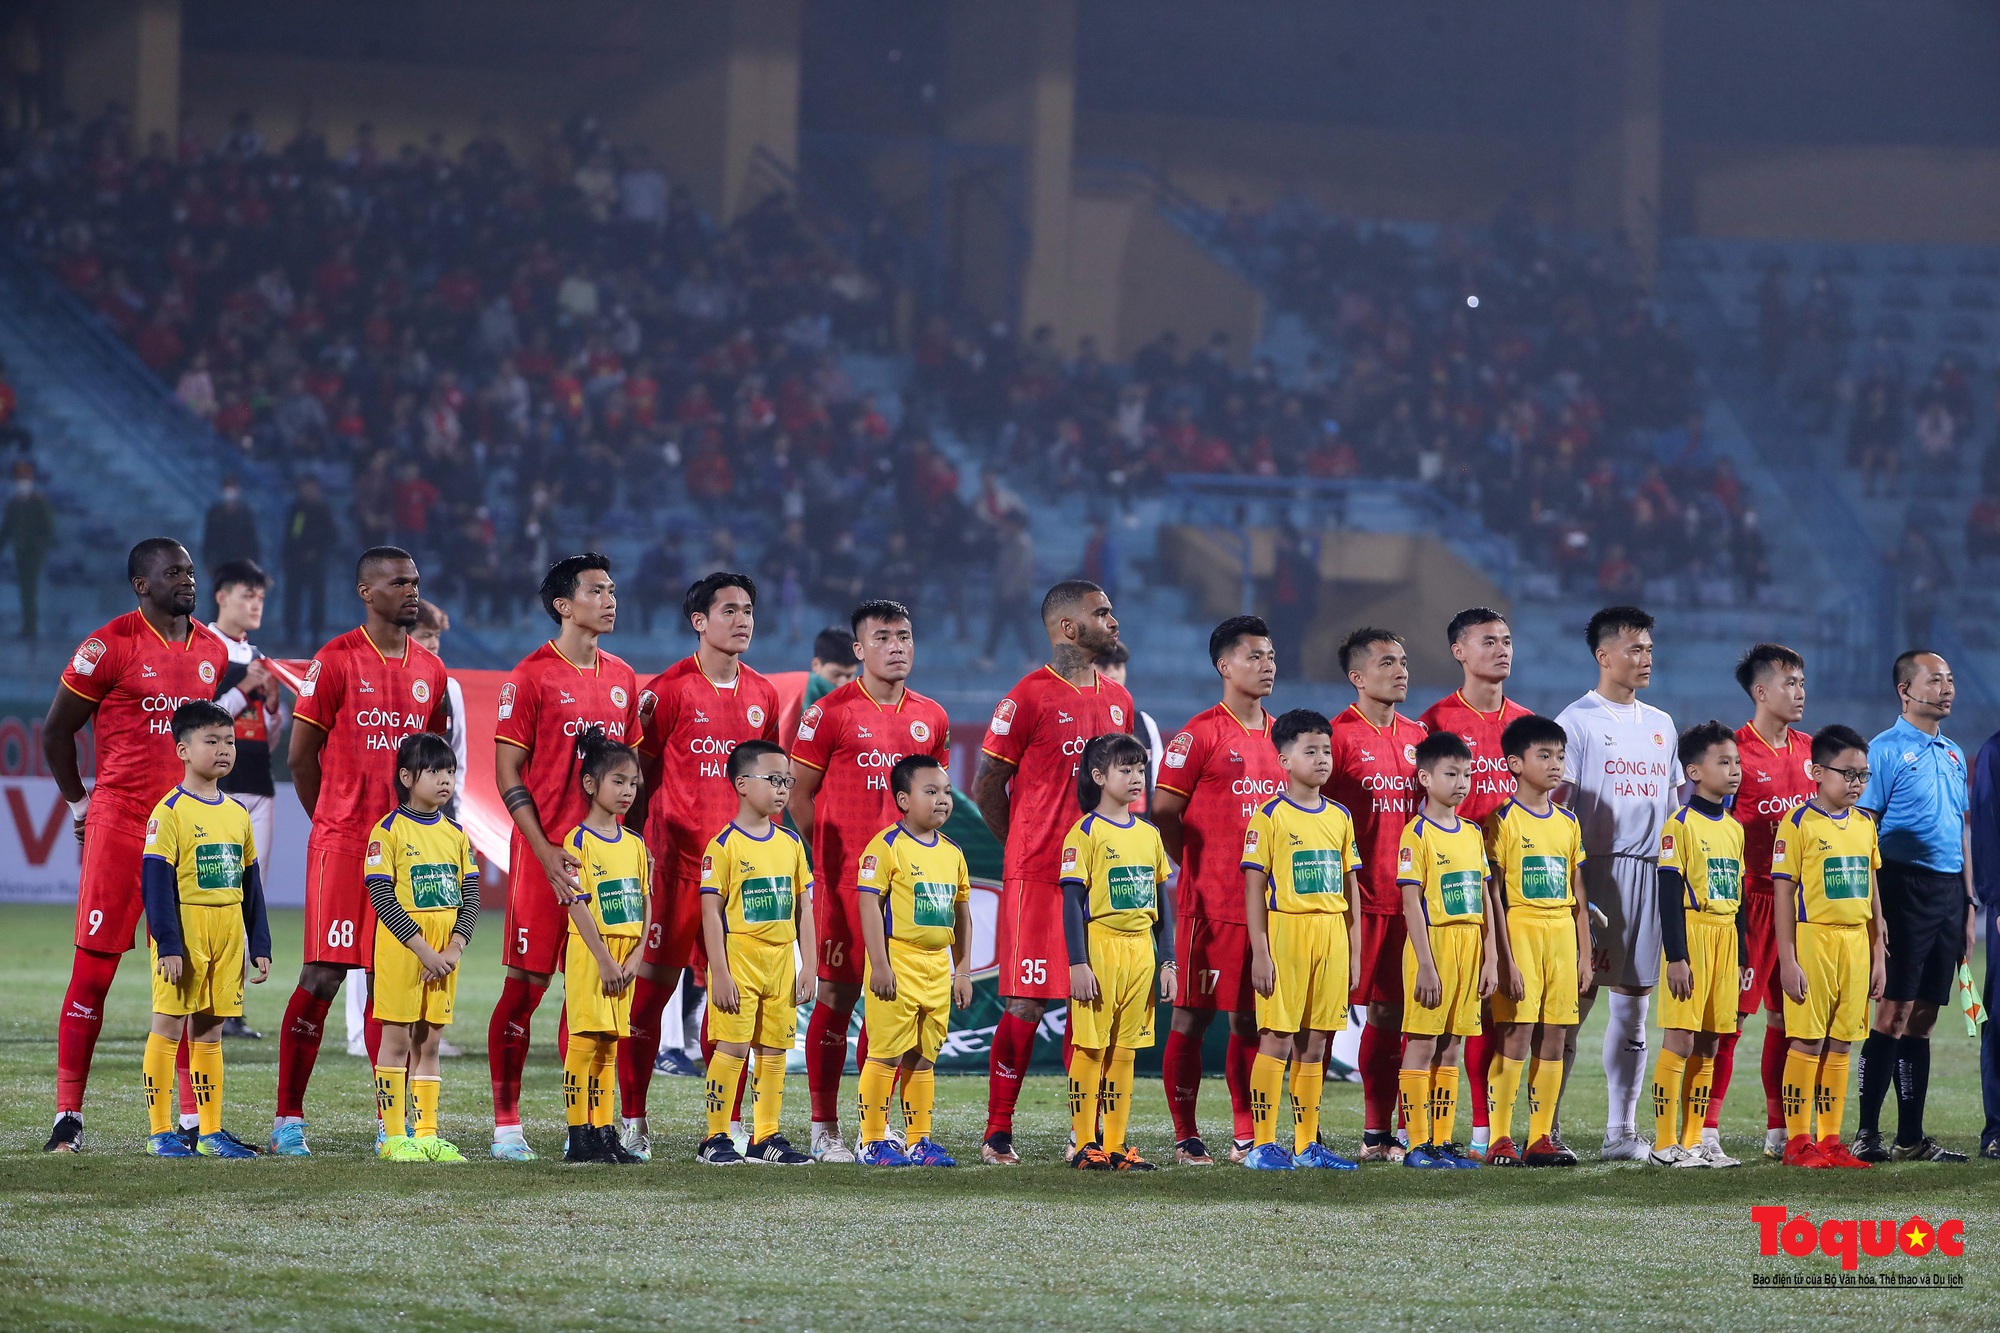 Công an Hà Nội có chiến thắng 5 sao trước Topeland Bình Định trong ngày trở lại V-League - Ảnh 1.